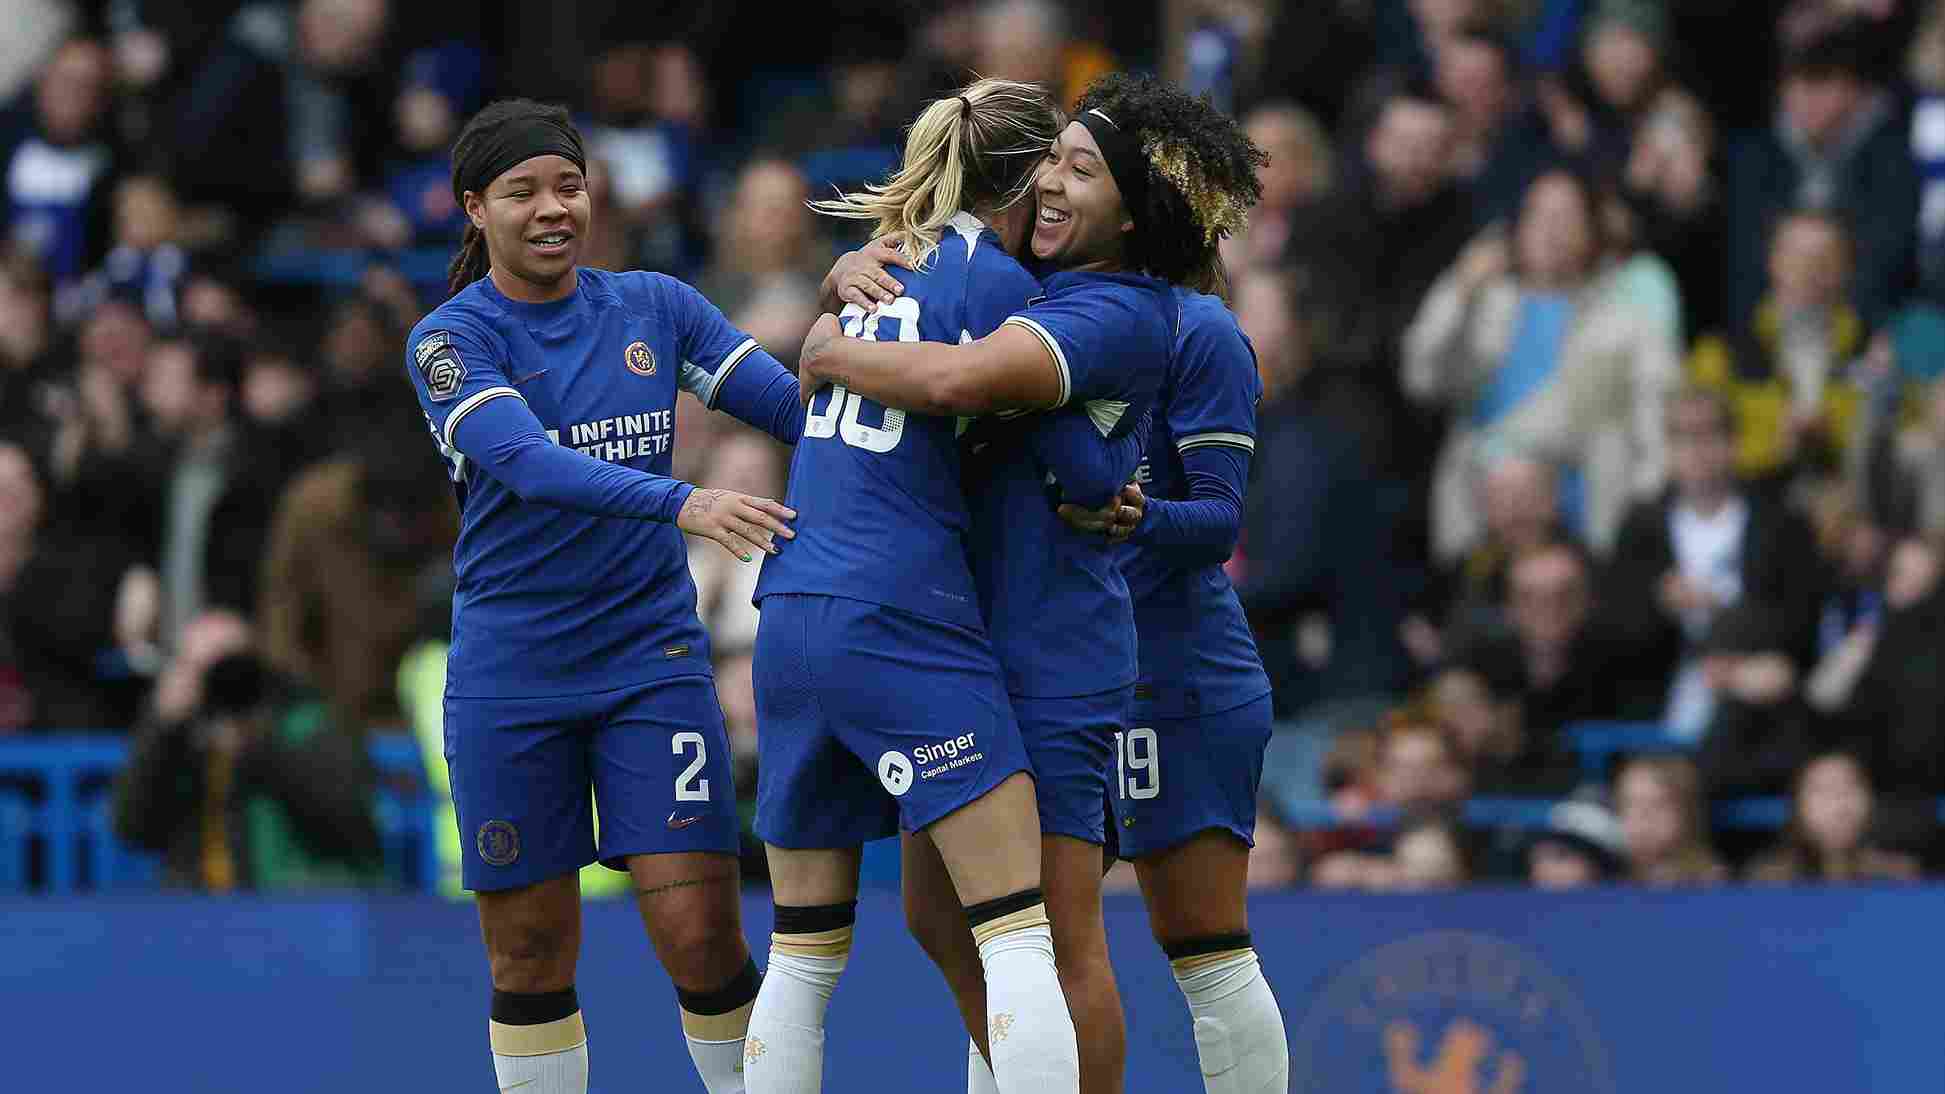  Barclays-Women's-Super-League è il massimo campionato di calcio femminile in Inghilterra. È sponsorizzato dalla Barclays e comprende 12 squadre provenienti da diverse città del paese. La lega è stata fondata nel 2011 e si svolge annualmente da settembre a maggio. Le squadre competono per il titolo di campione e per qualificarsi alle competizioni europee. 